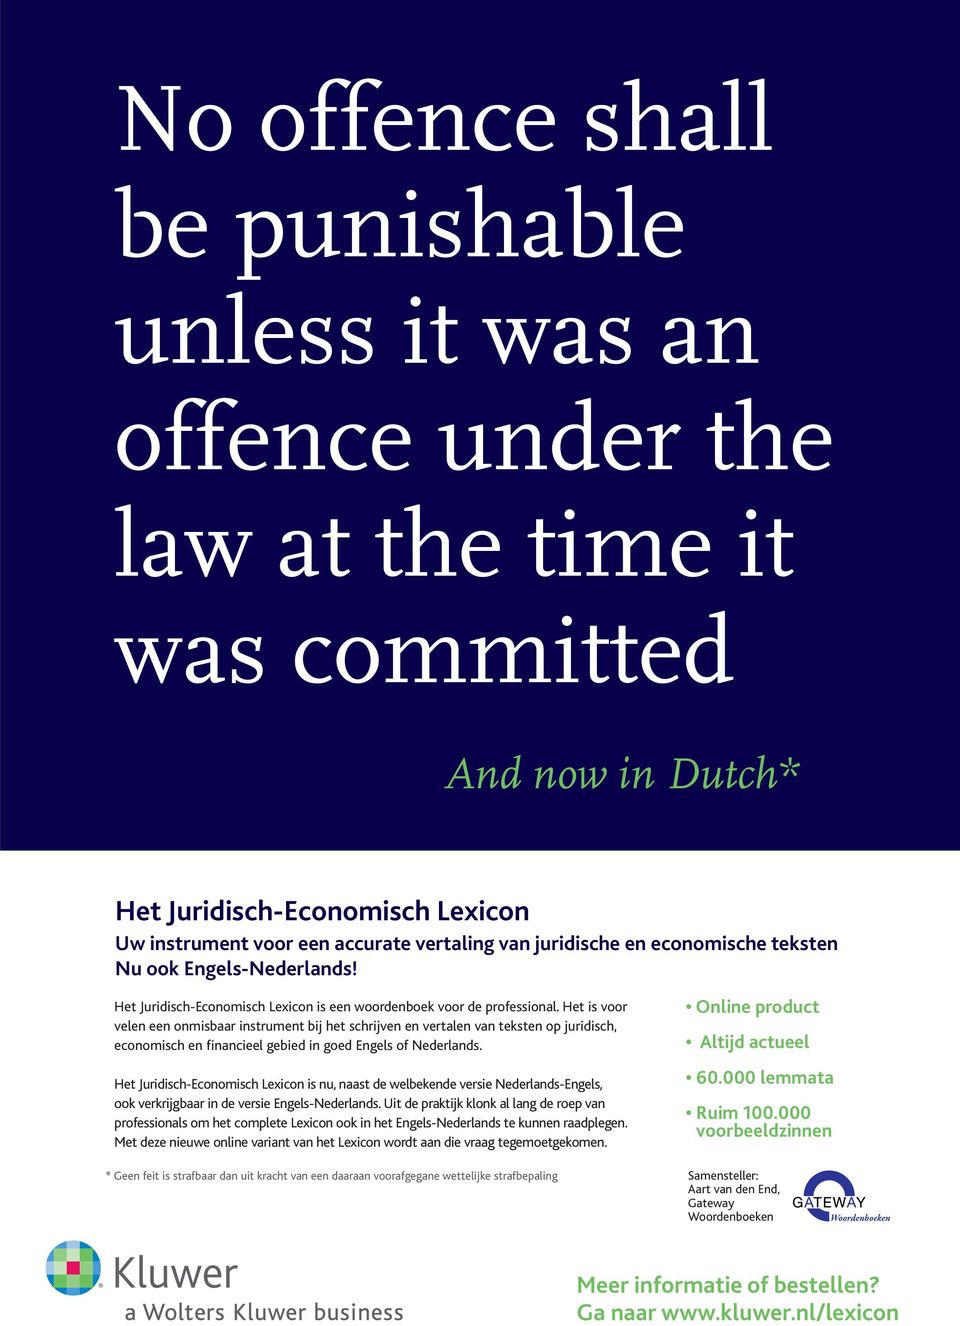 Het is voor velen een onmisbaar instrument bij het schrijven en vertalen van teksten op juridisch, economisch en financieel gebied in goed Engels of Nederlands.